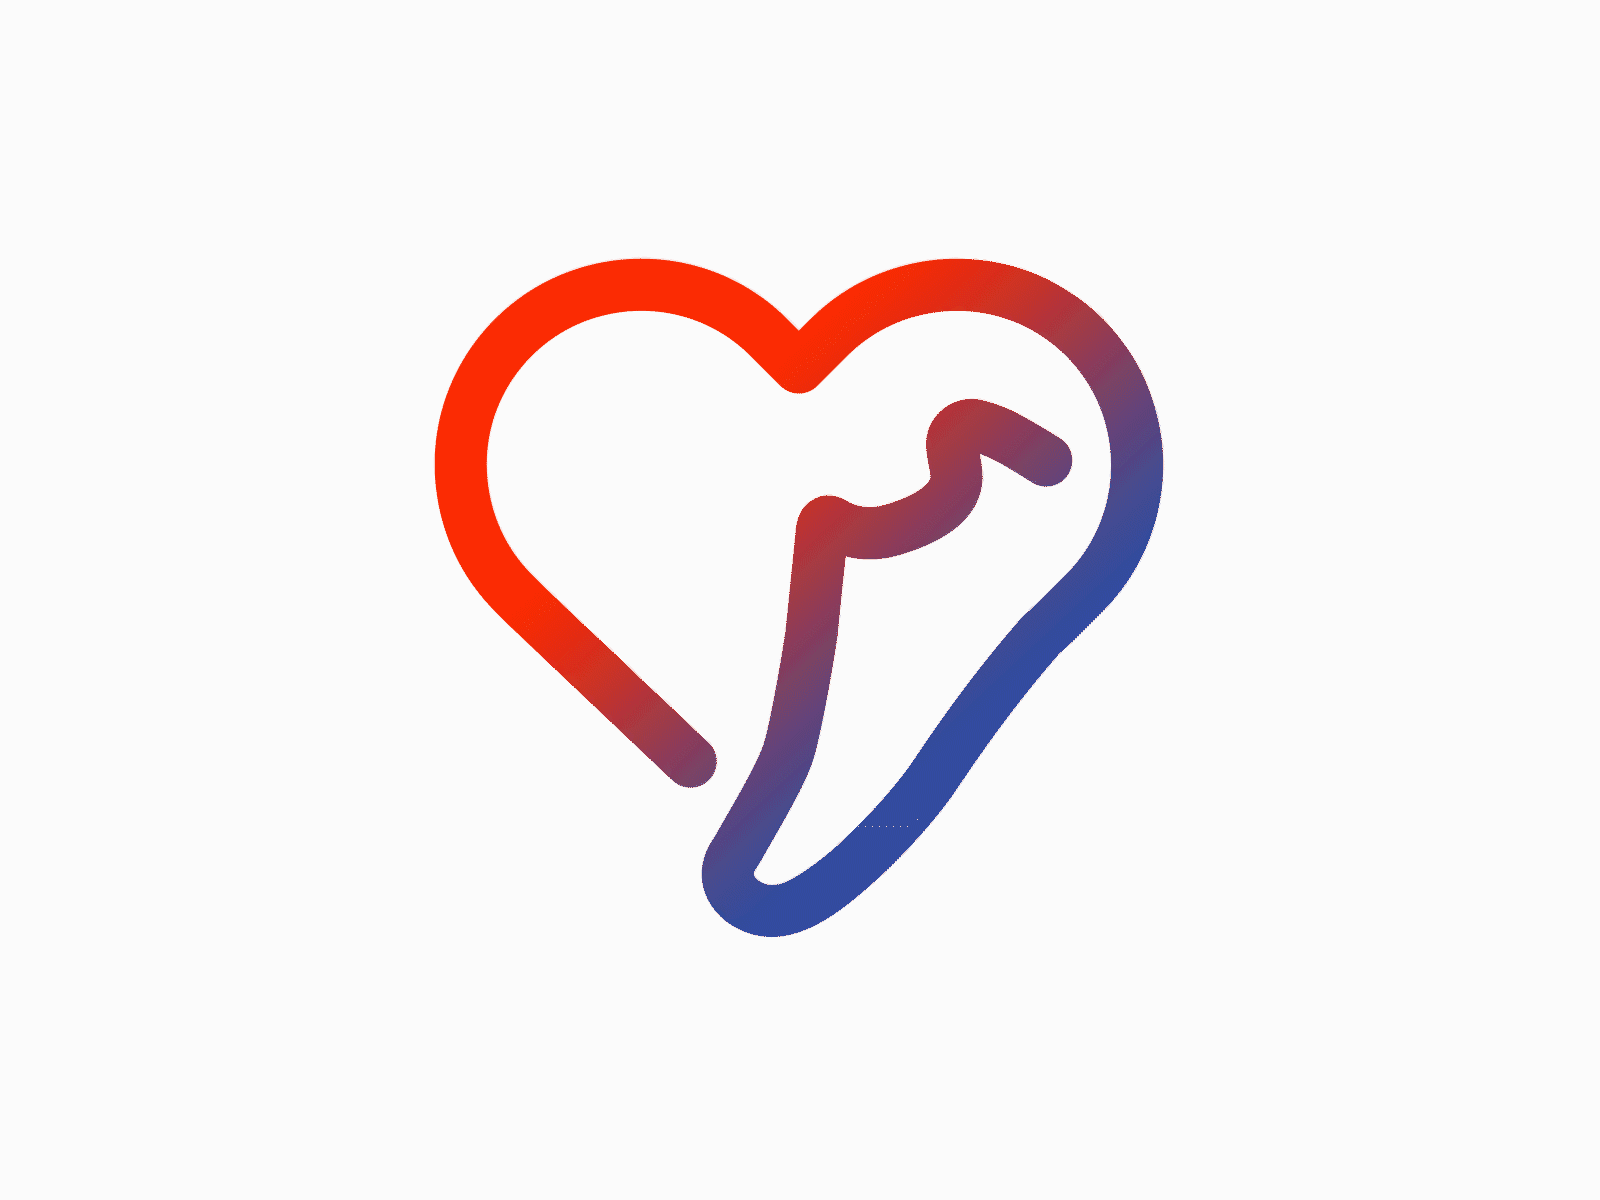 Runner's Heart Logo Animation